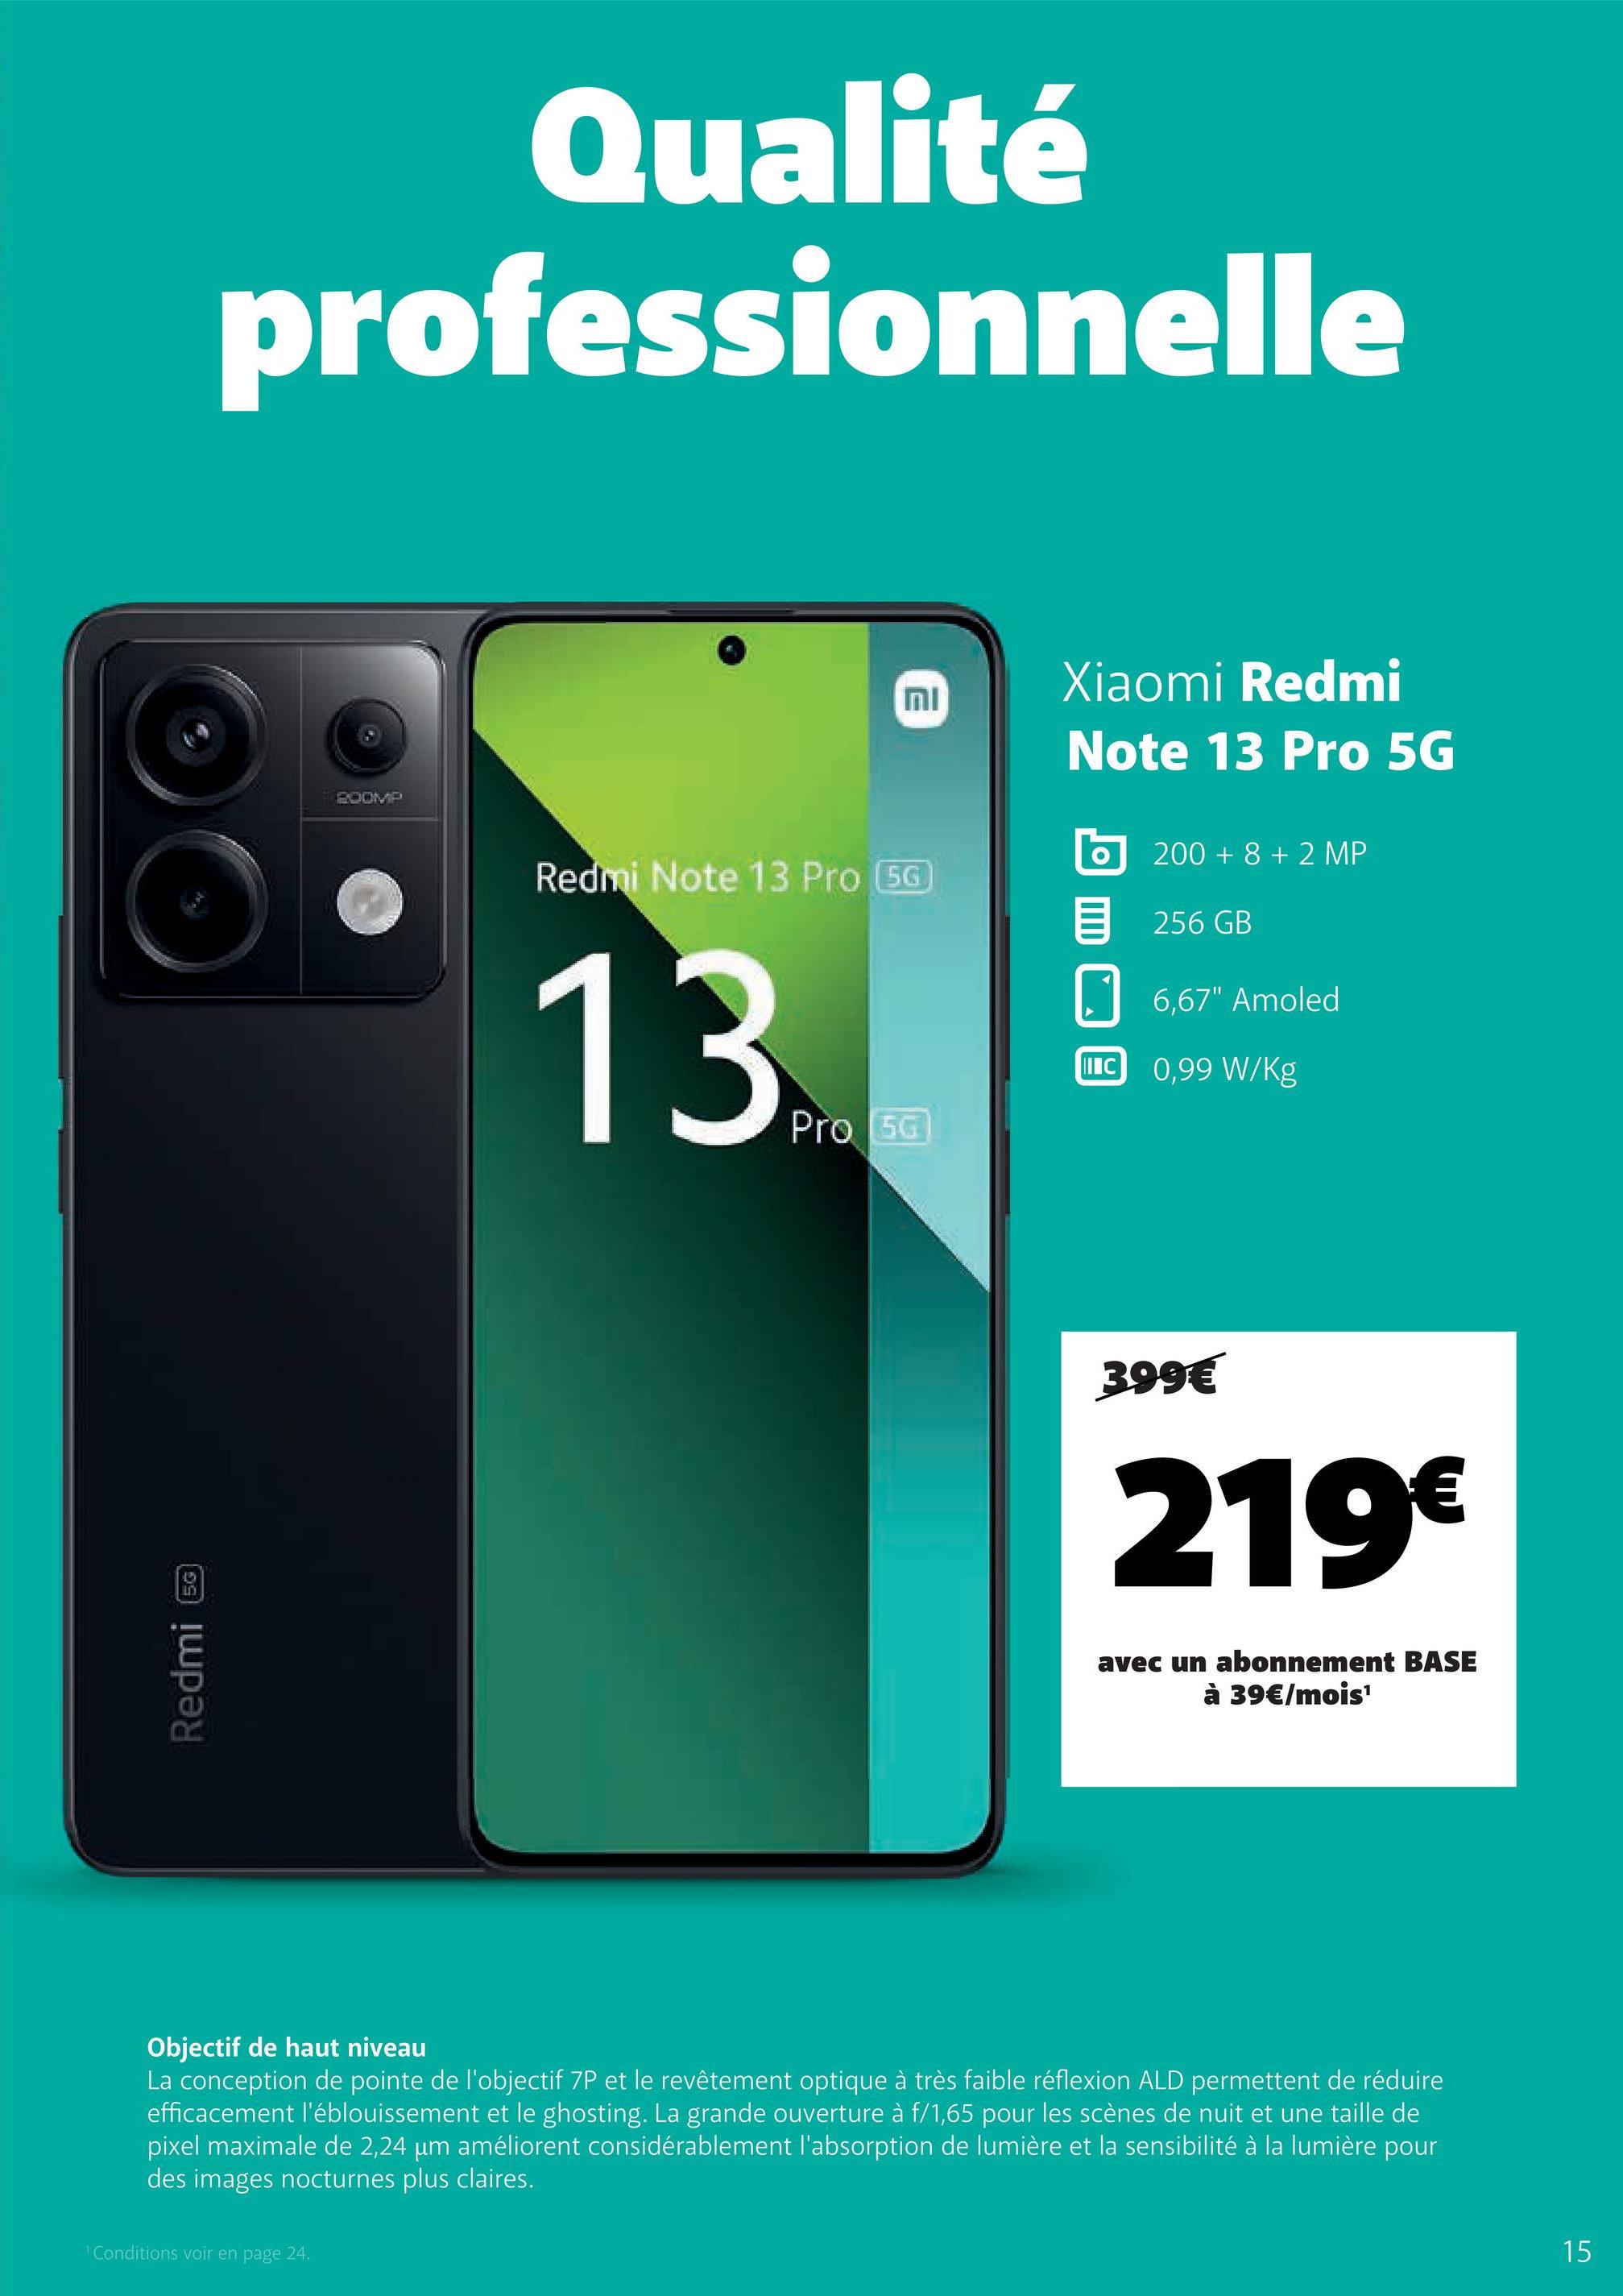 Redmi
5G
Qualité
professionnelle
200MP
וח
Xiaomi Redmi
Note 13 Pro 5G
Redmi Note 13 Pro (5G
13t
Pro 50
200+8+2 MP
目 256 GB
6,67" Amoled
IC 0,99 W/kg
399€
219€
avec un abonnement BASE
à 39€/mois¹
Objectif de haut niveau
La conception de pointe de l'objectif 7P et le revêtement optique à très faible réflexion ALD permettent de réduire
efficacement l'éblouissement et le ghosting. La grande ouverture à f/1,65 pour les scènes de nuit et une taille de
pixel maximale de 2,24 µm améliorent considérablement l'absorption de lumière et la sensibilité à la lumière pour
des images nocturnes plus claires.
1 Conditions voir en page 24.
15